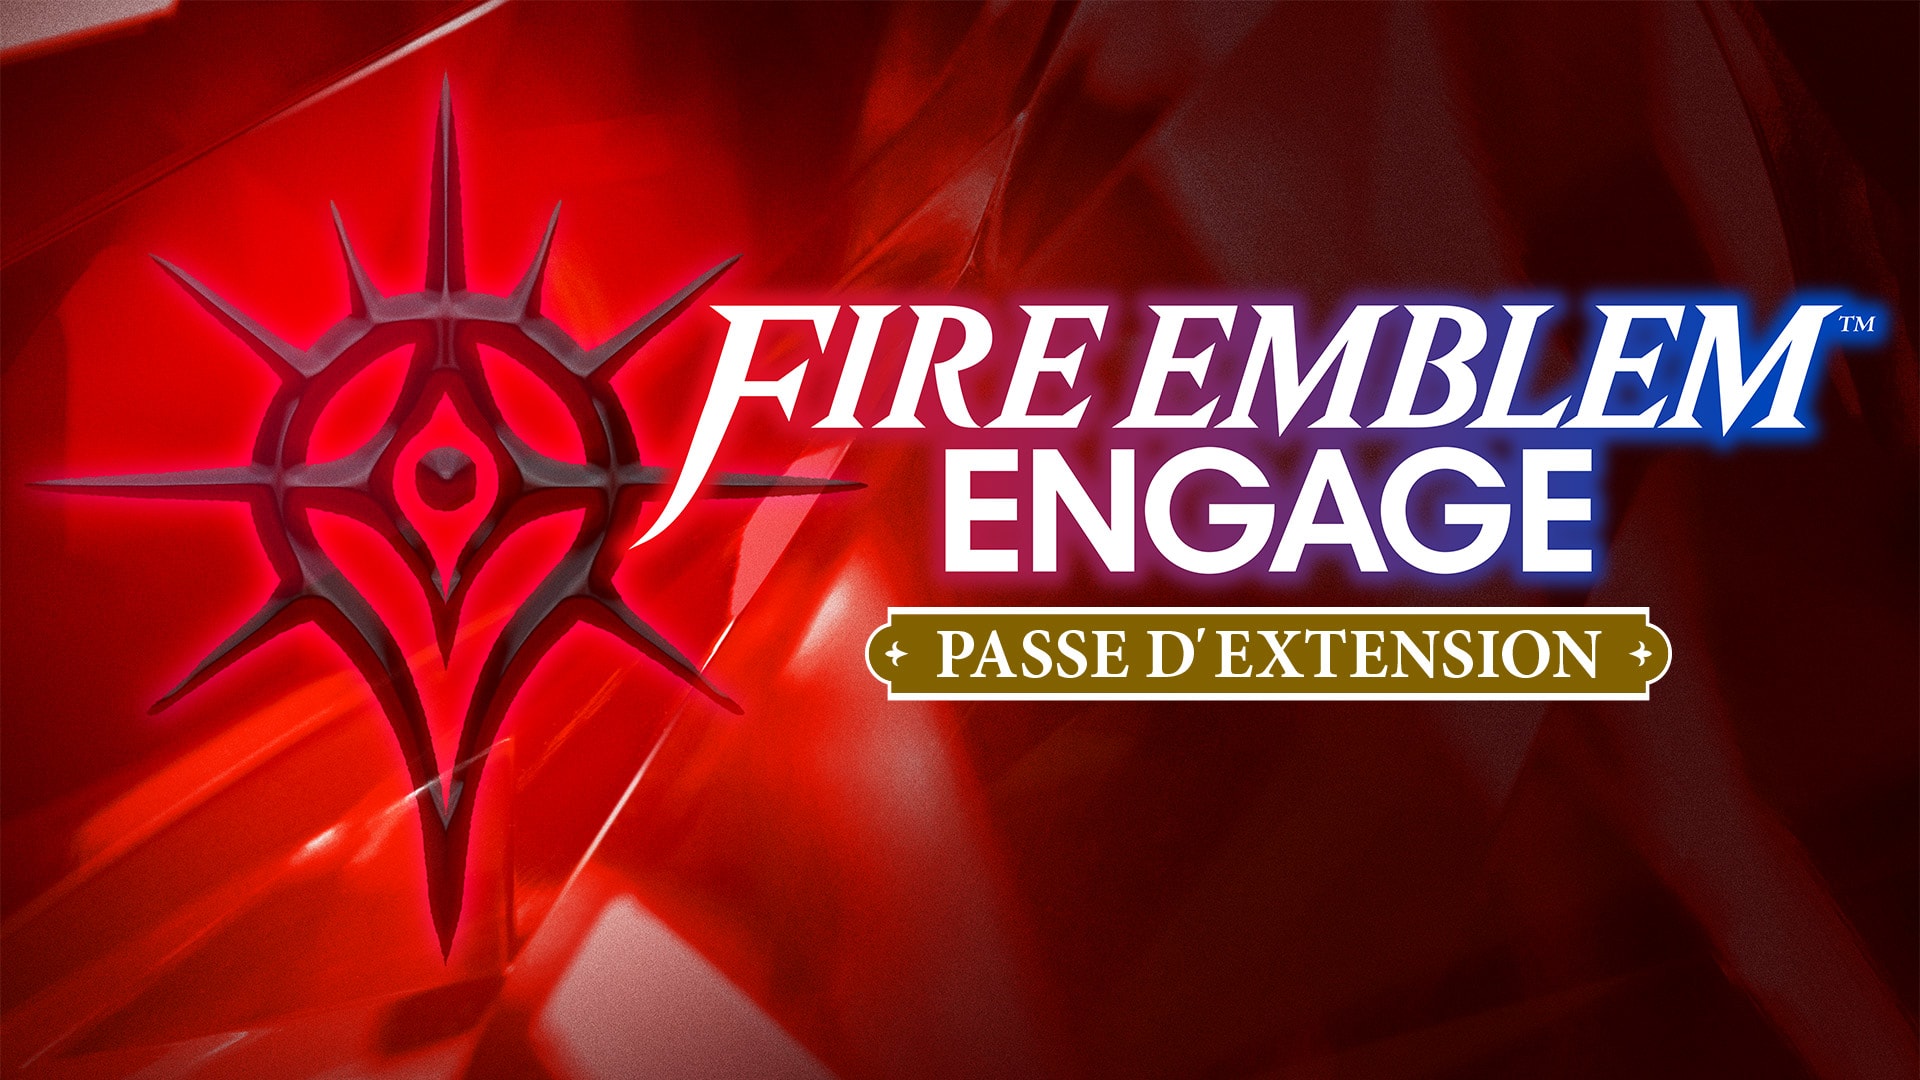 Fire Emblem™ Engage Passe d'extension